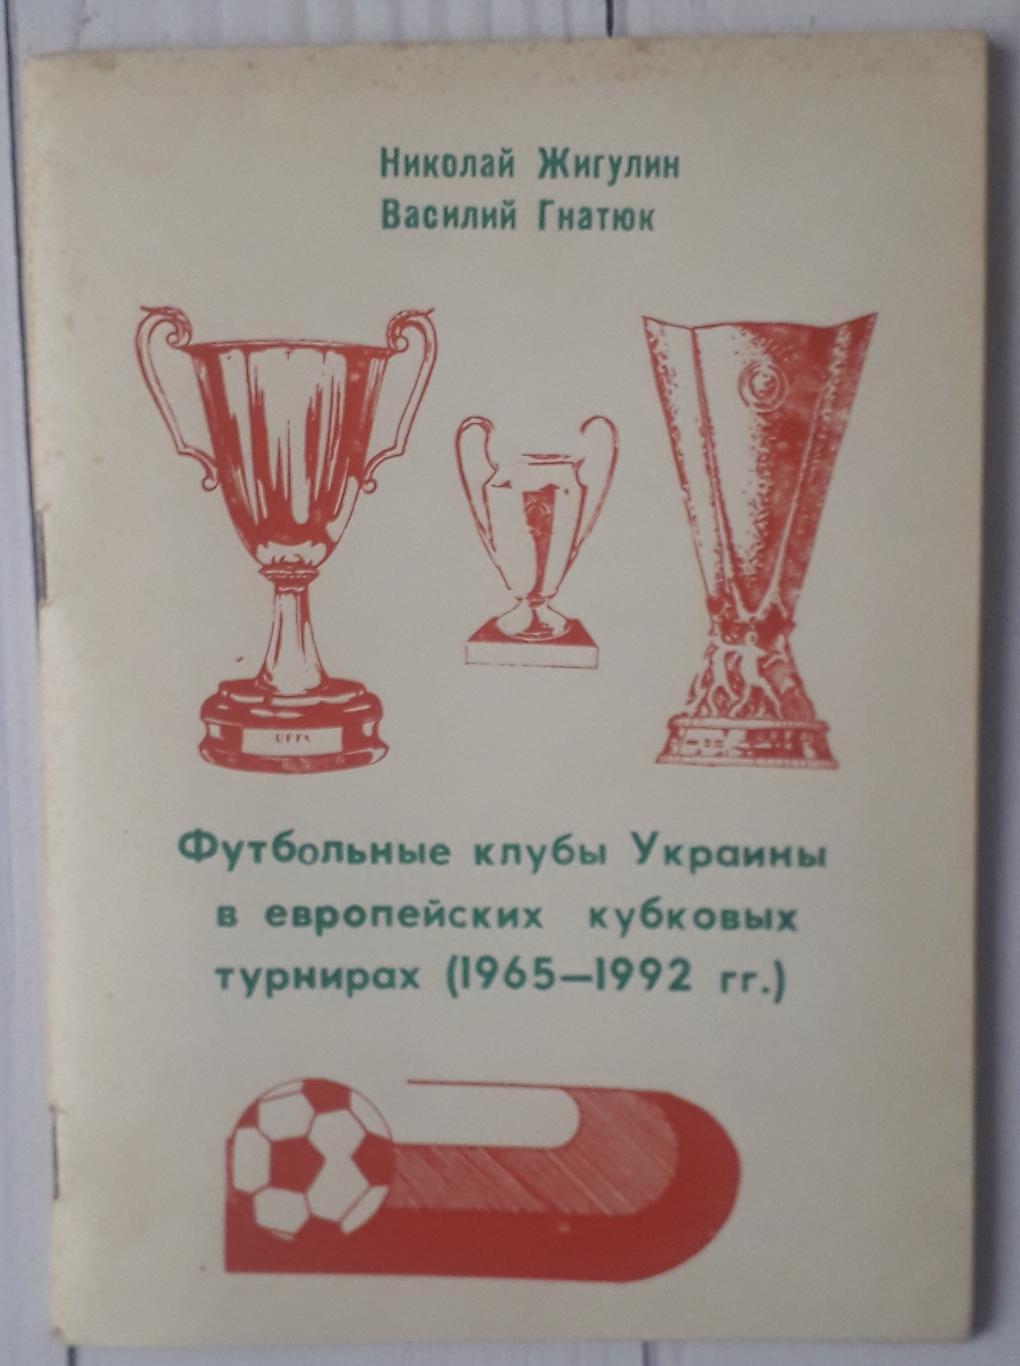 Футбольные клубы Украины в еропейских кубковых турнирах (1965-1992 гг.)